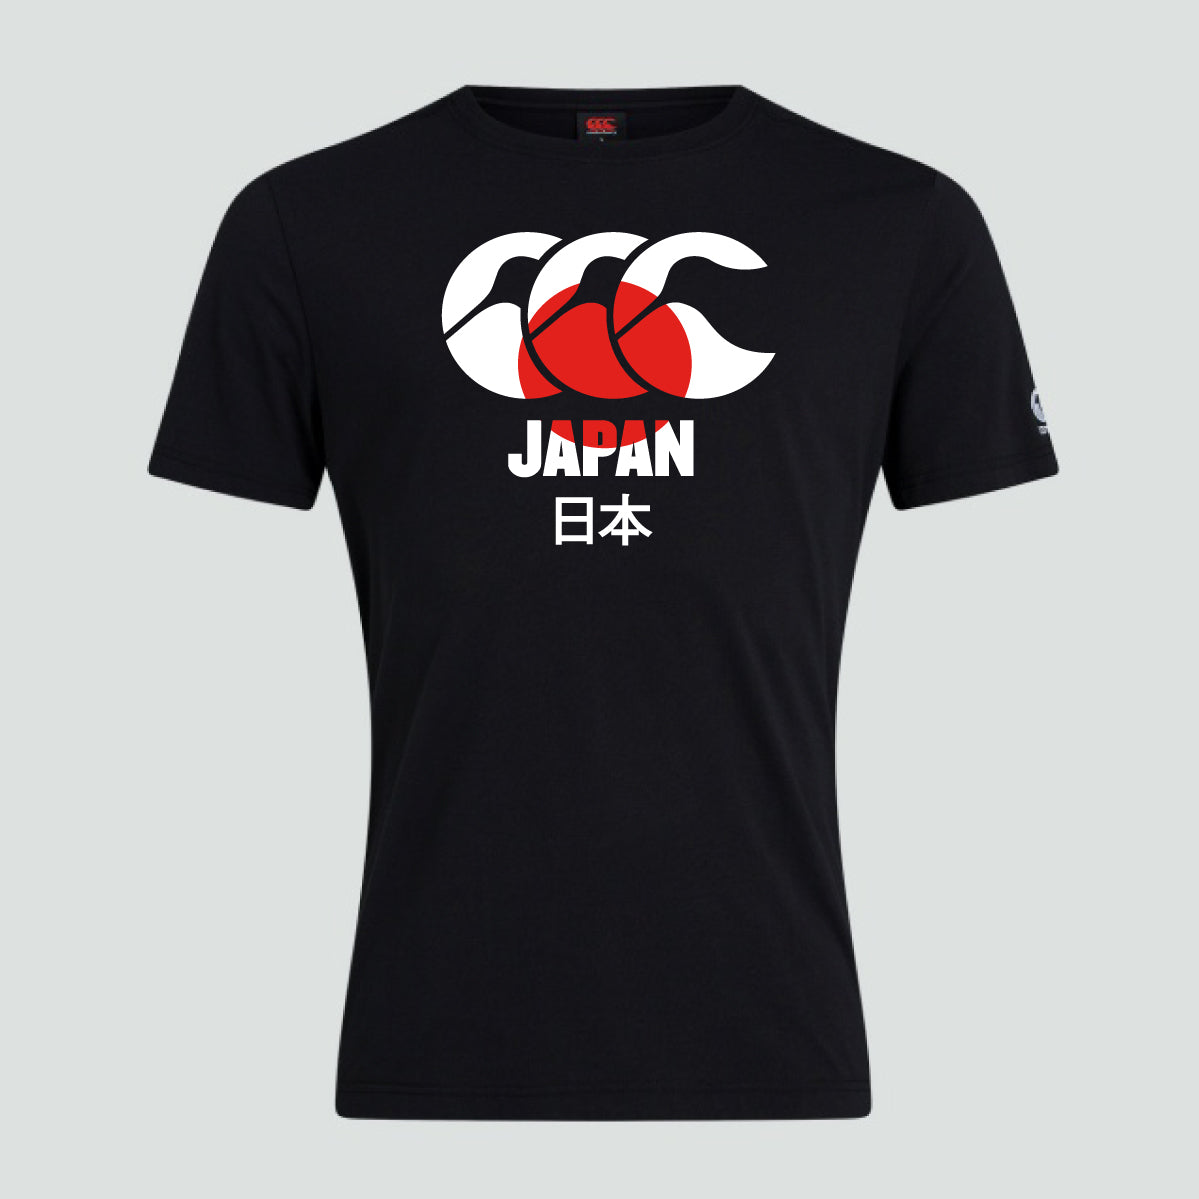 Japan Kids T-shirt